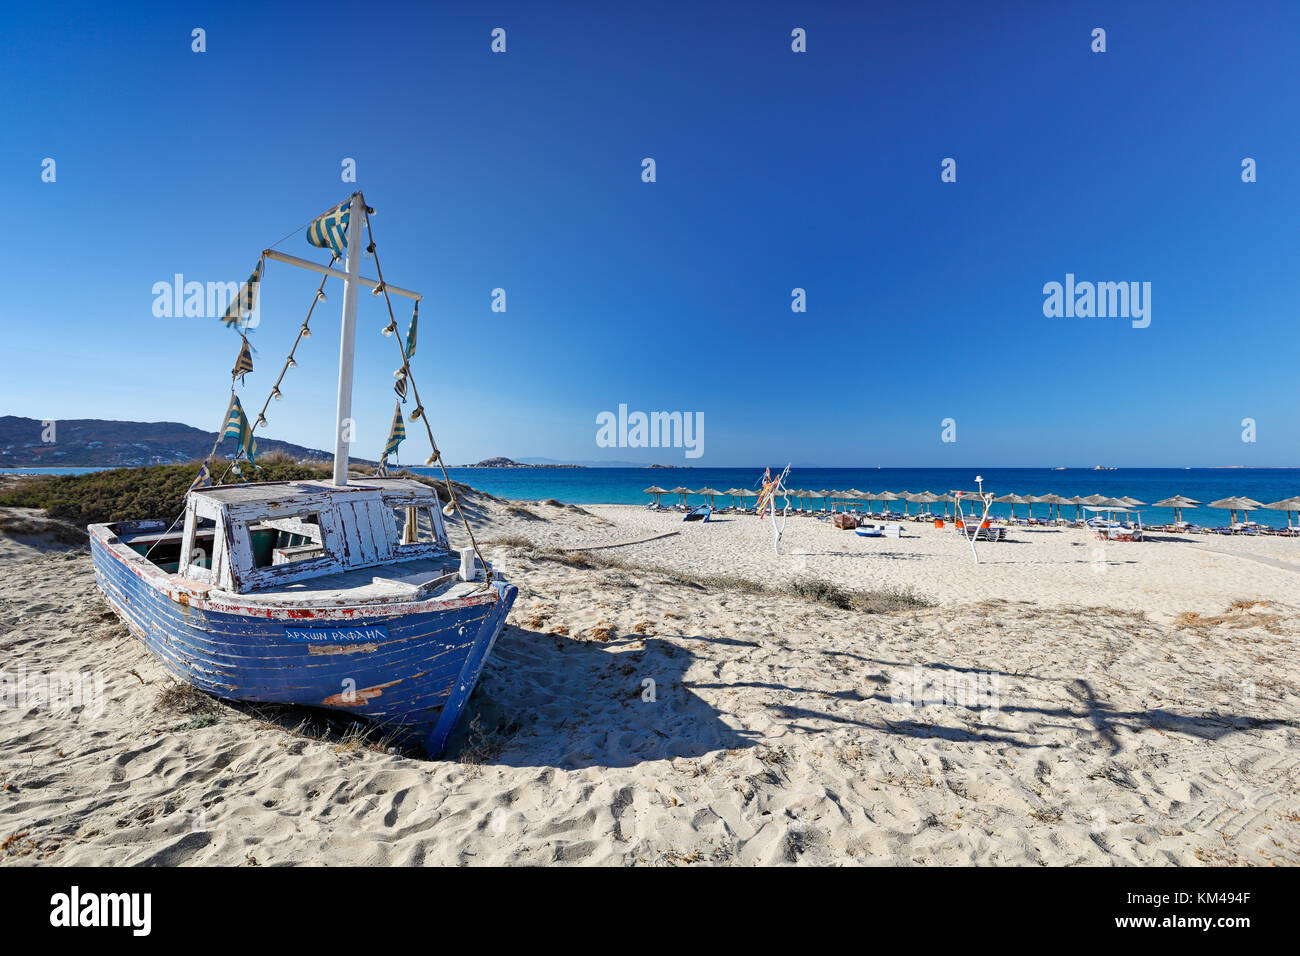 Ein Boot am Strand von Plaka auf der Insel Naxos, Griechenland  Stockfotografie - Alamy